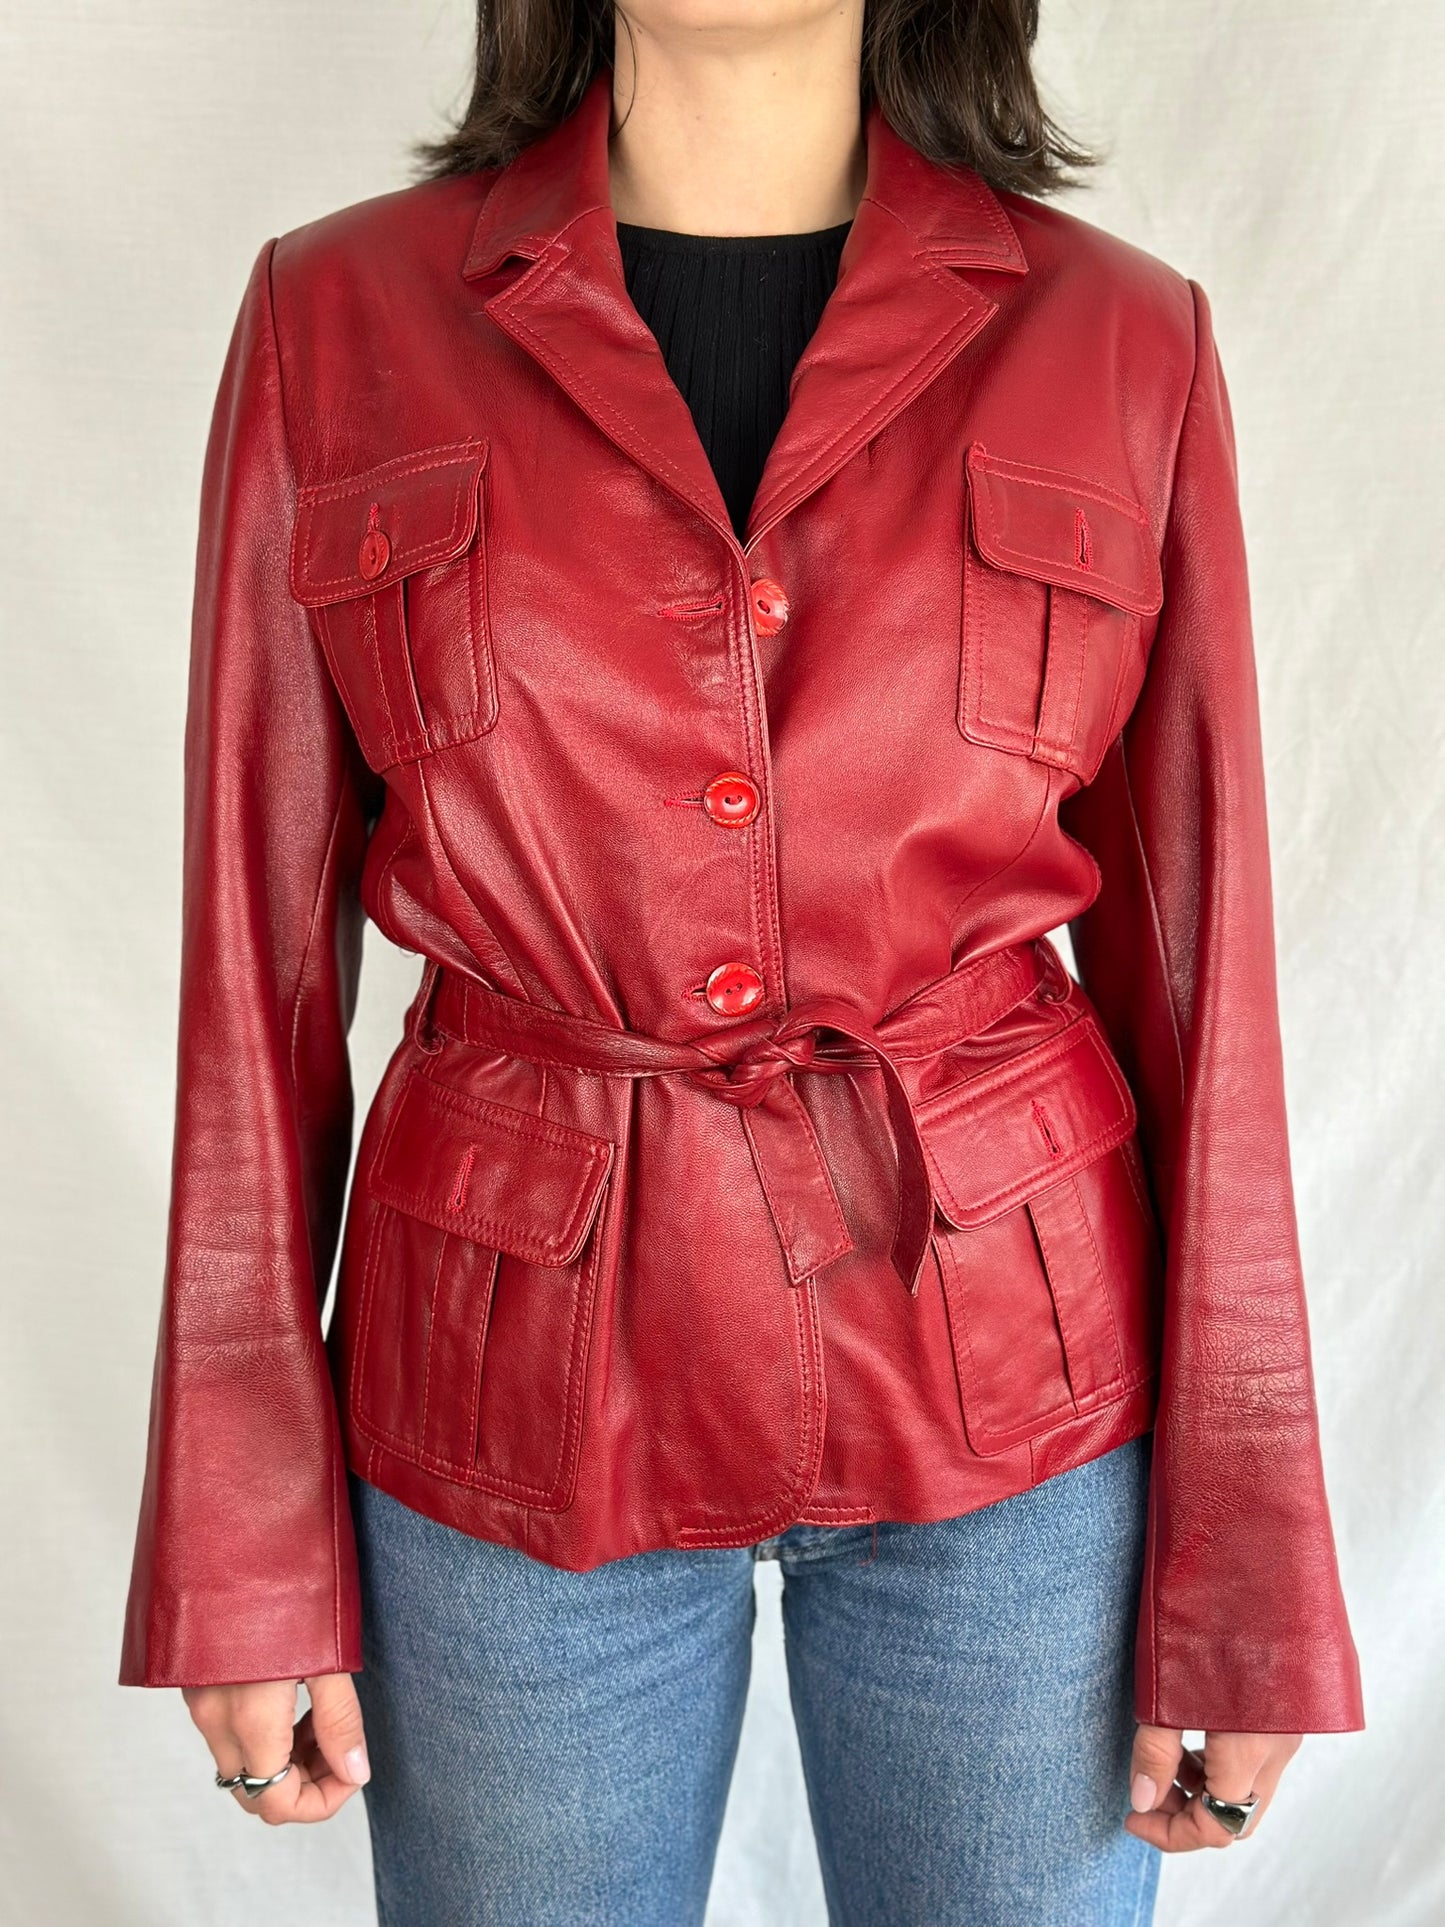 Vintage Red Leather Jacket